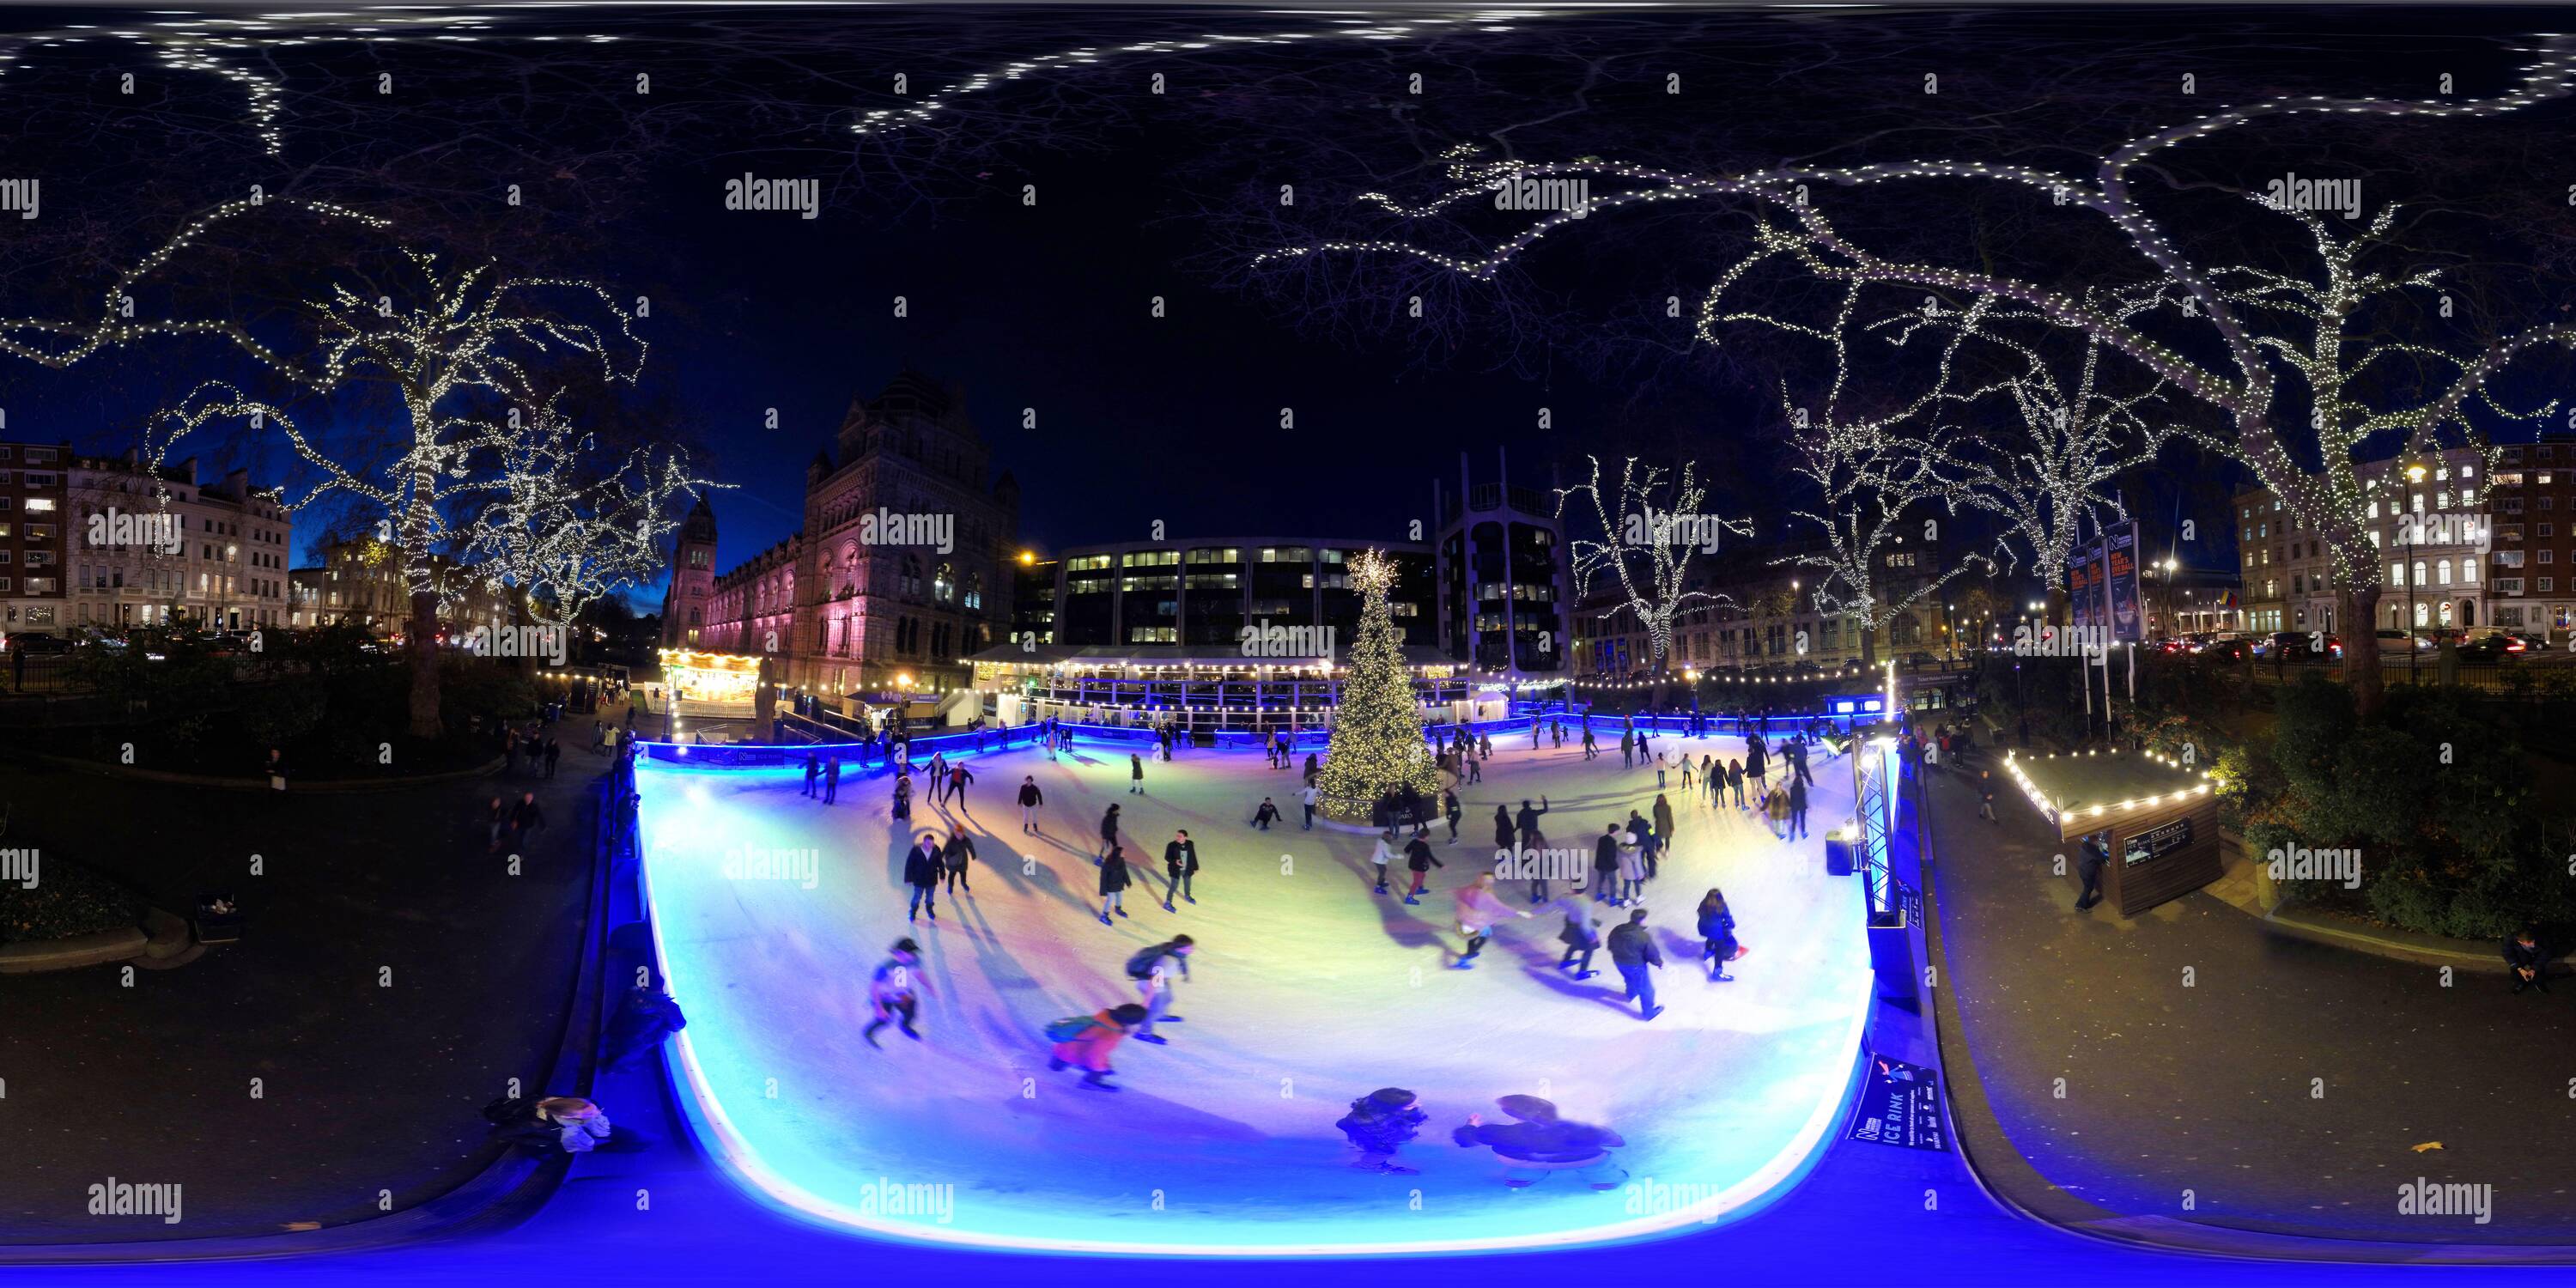 Visualizzazione panoramica a 360 gradi di I pattinatori si divertono prima di Natale mentre pattinano intorno alla pista di pattinaggio al Natural History Museum di Londra. Immagine : Mark Pain / Alamy